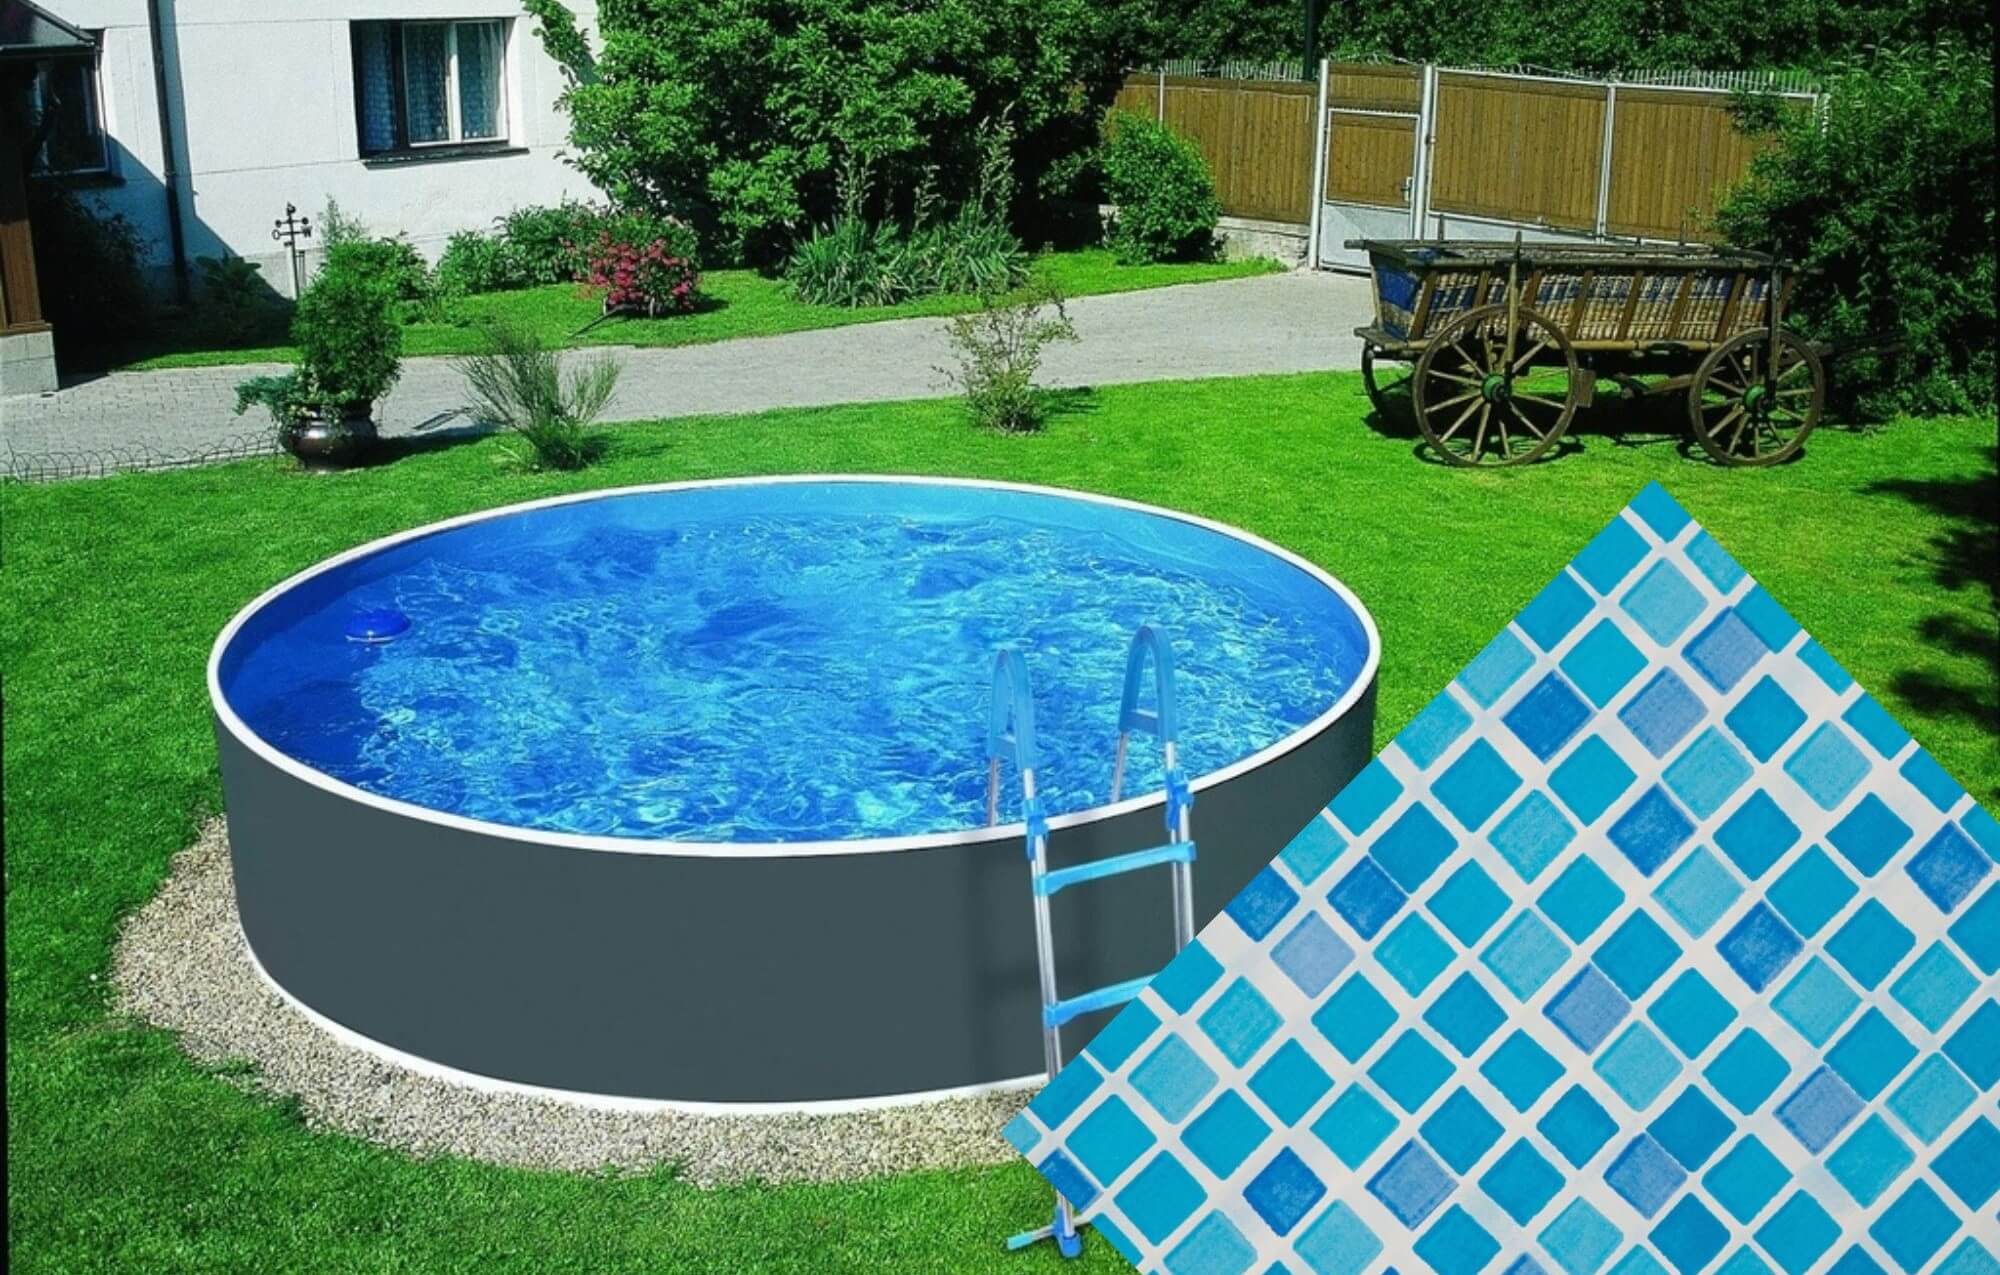 Planet Pool 30669 Náhradná bazénová fólia Mosaic pre bazén priemer 3,6 x 0,92 m